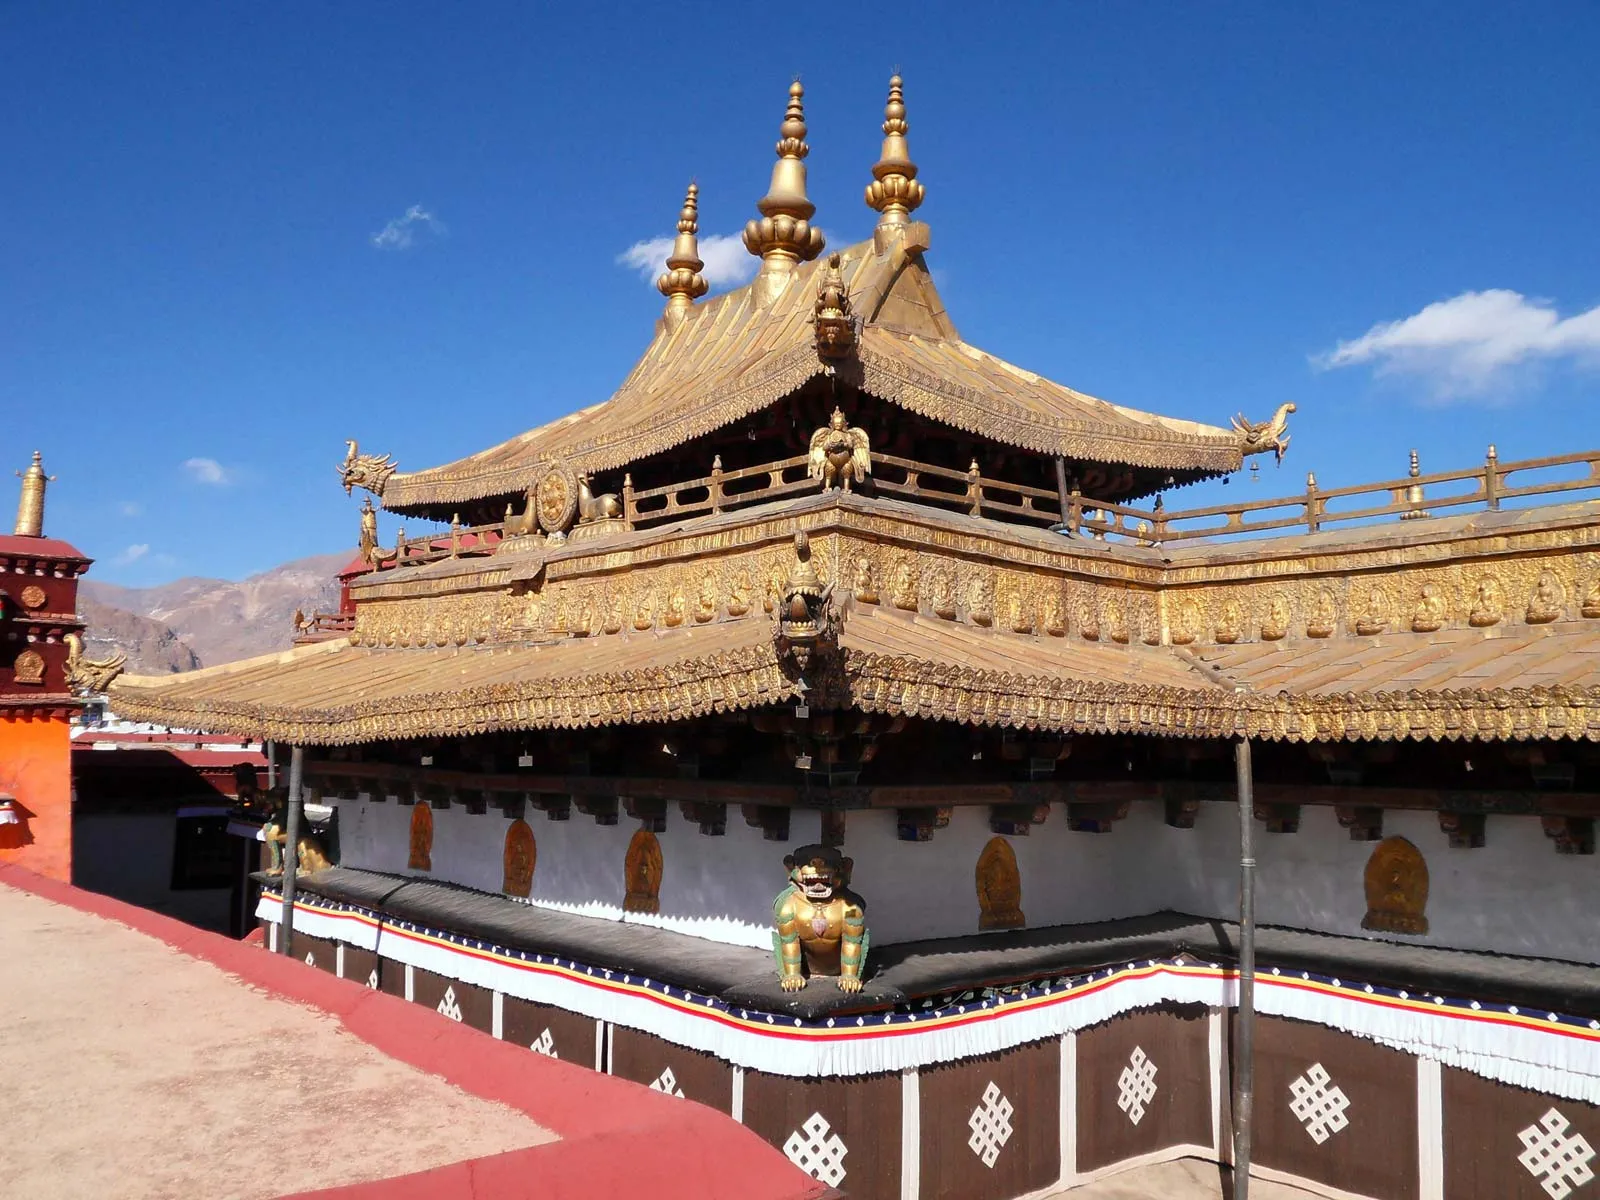 त्सुग्लाग्खांग मंदिर का इतिहास - History of tsuglagkhang temple